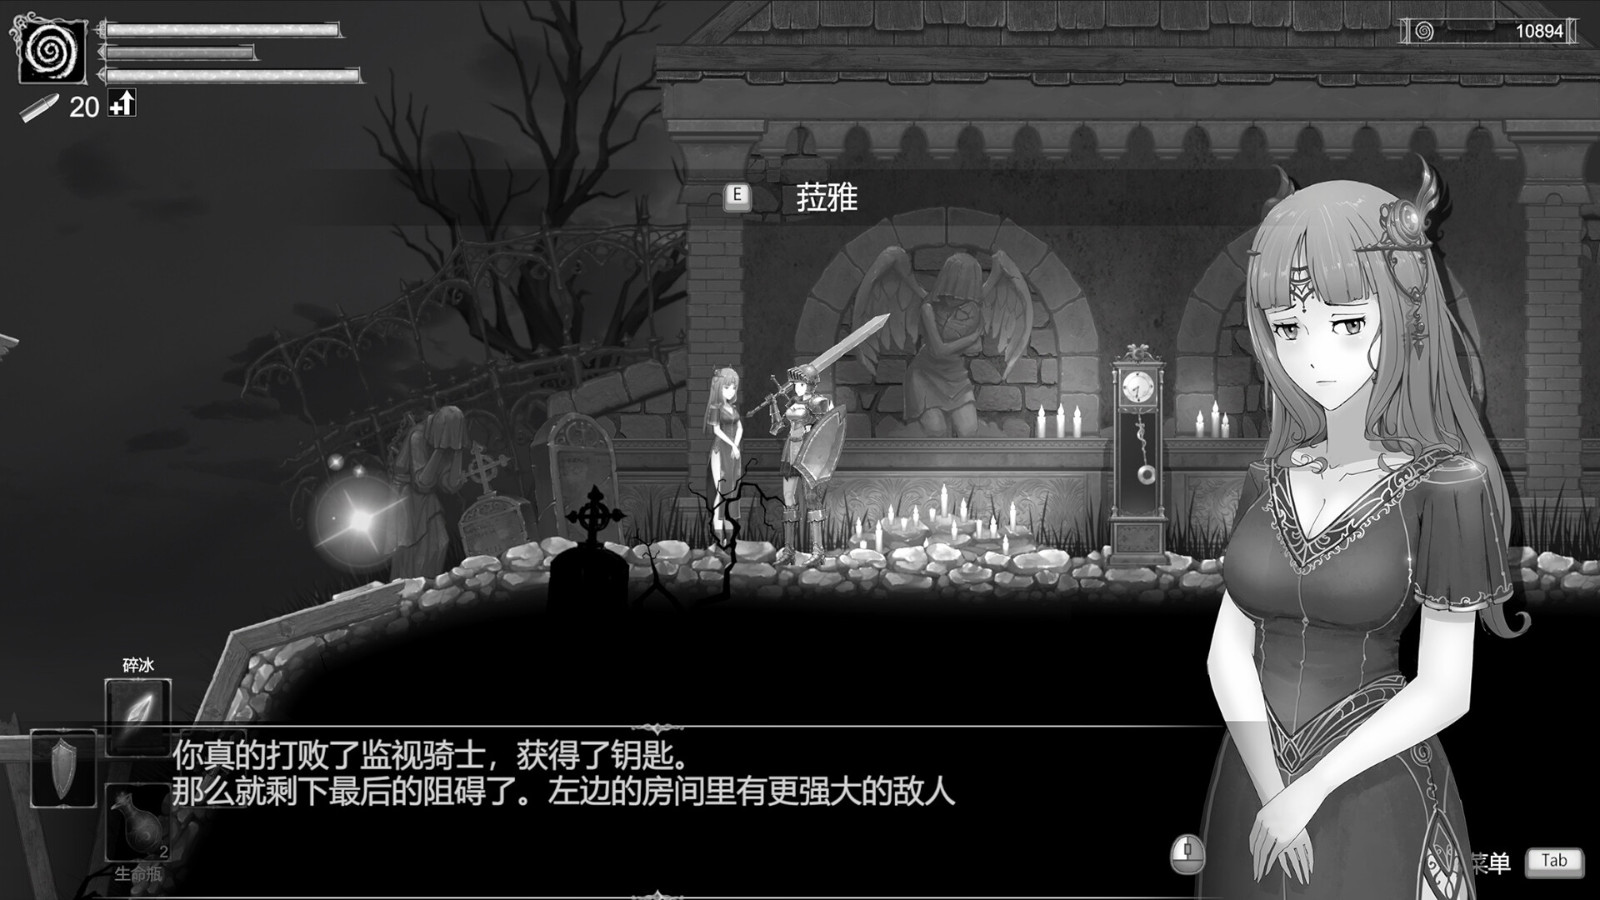 《漆乌太阳》Steam页里上线 反对于简体中文